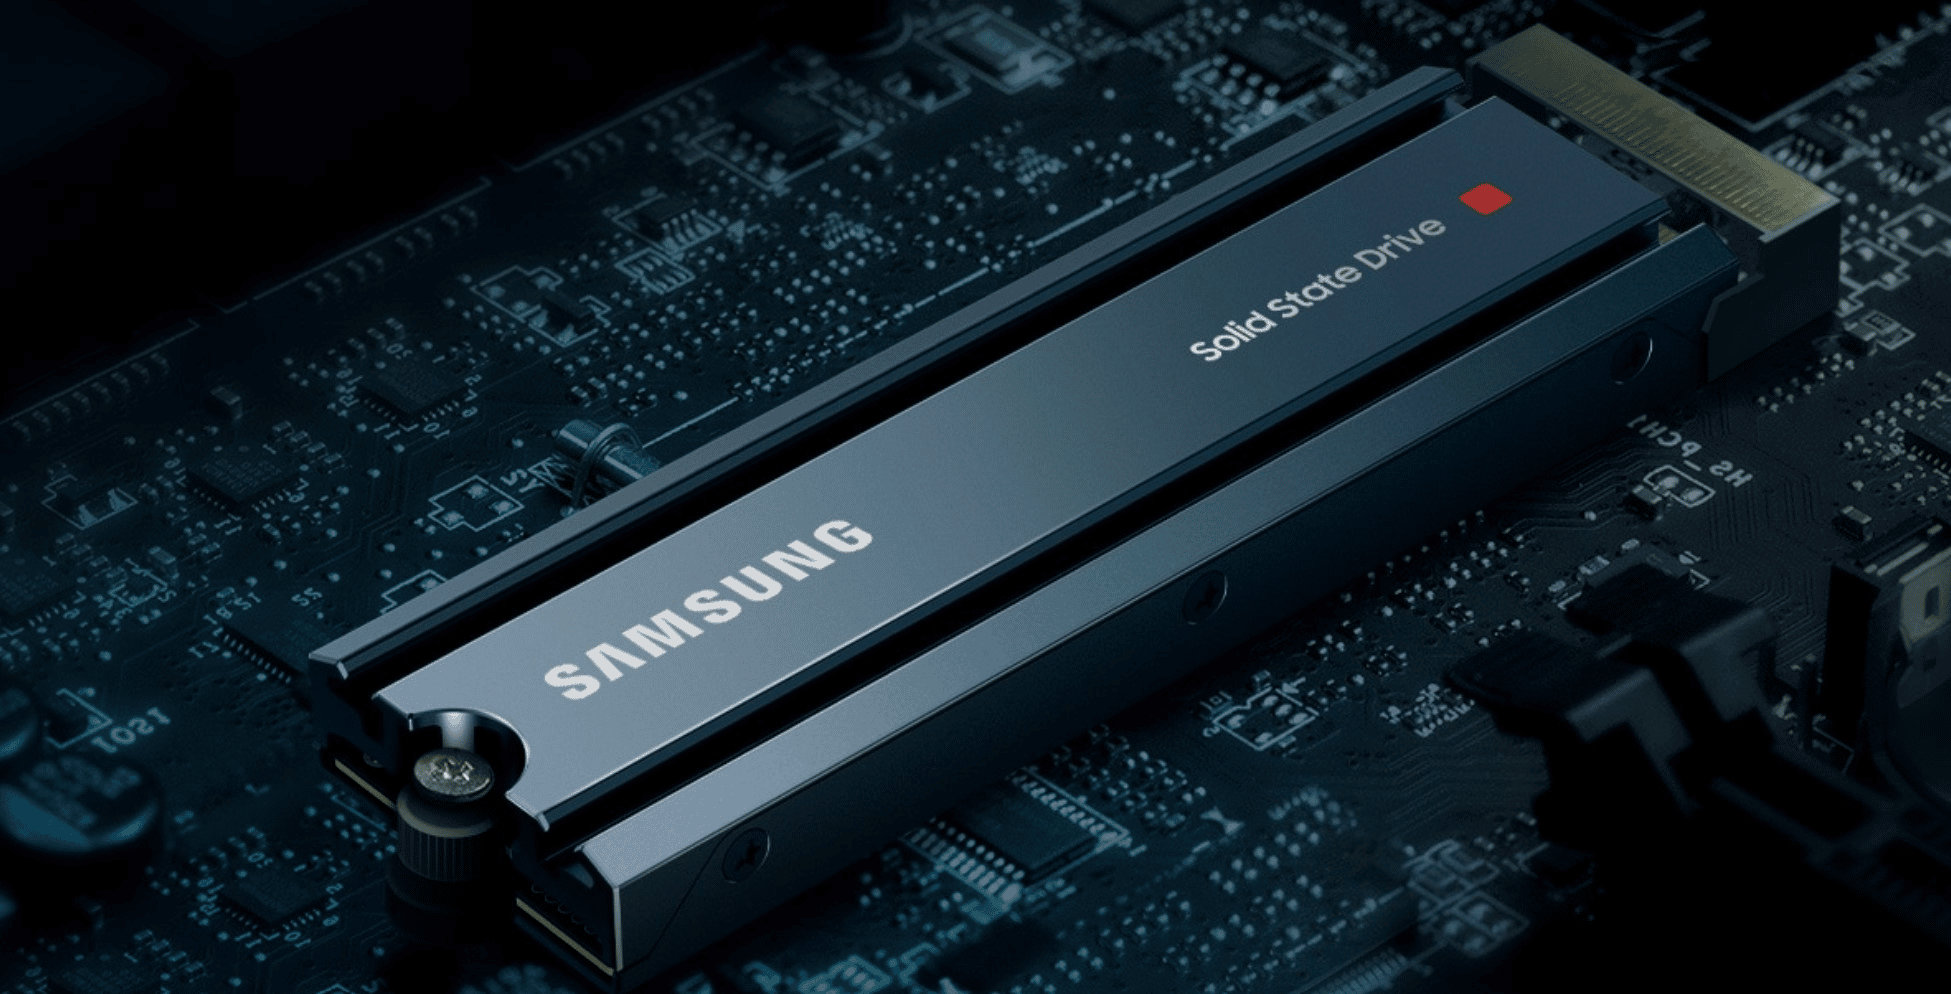 Samsung publie (enfin) un correctif pour ses SSD 980 PRO